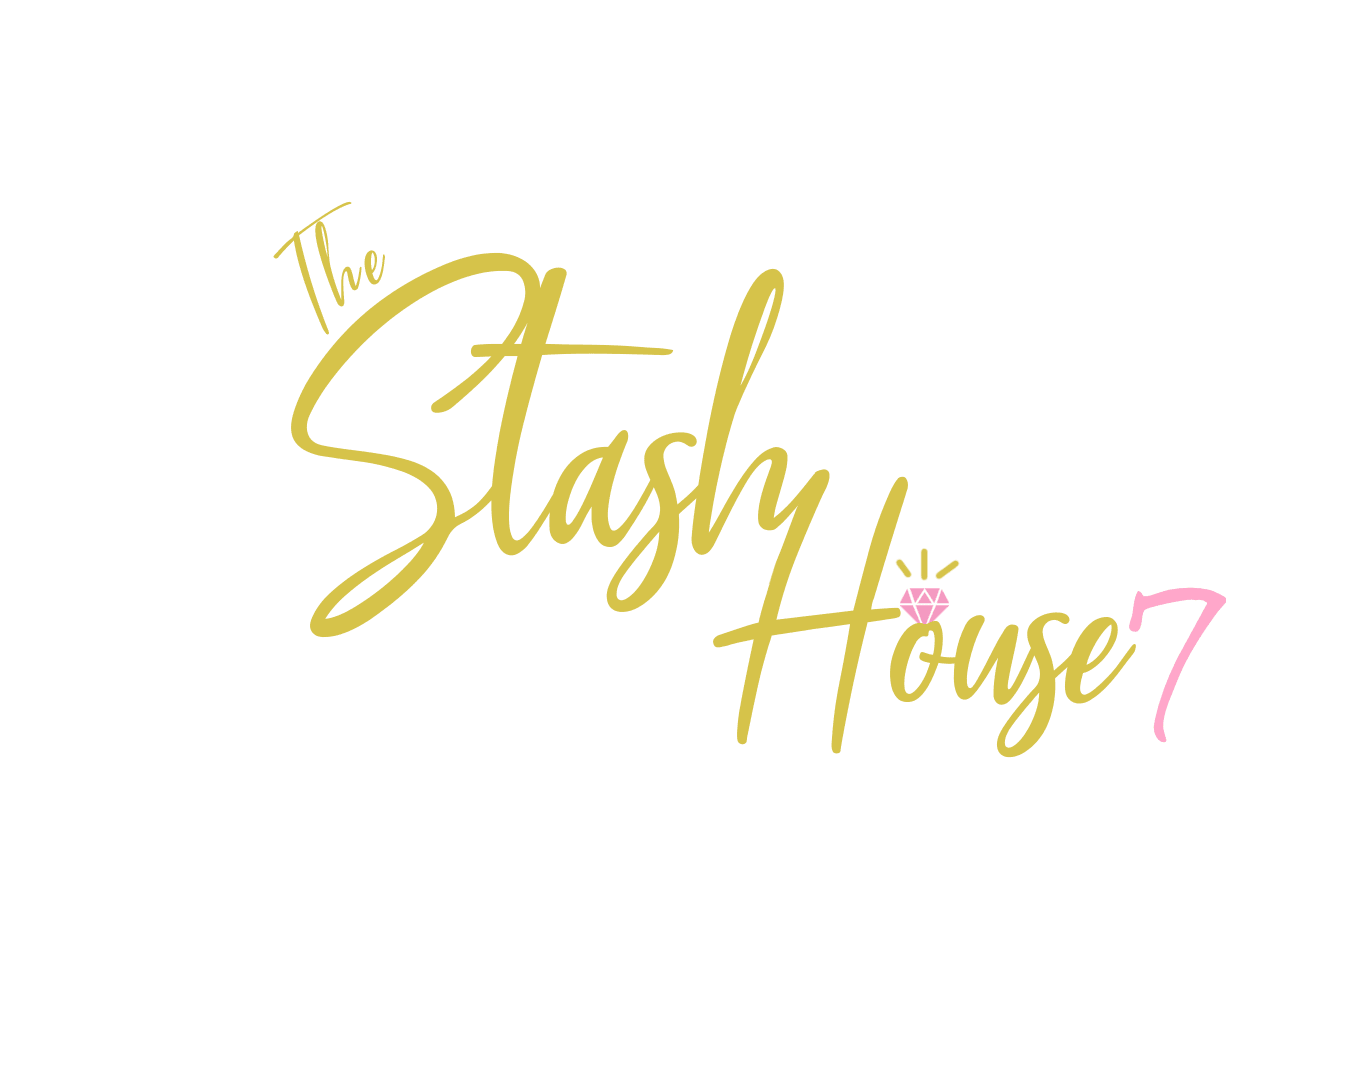 TheStashHouse7